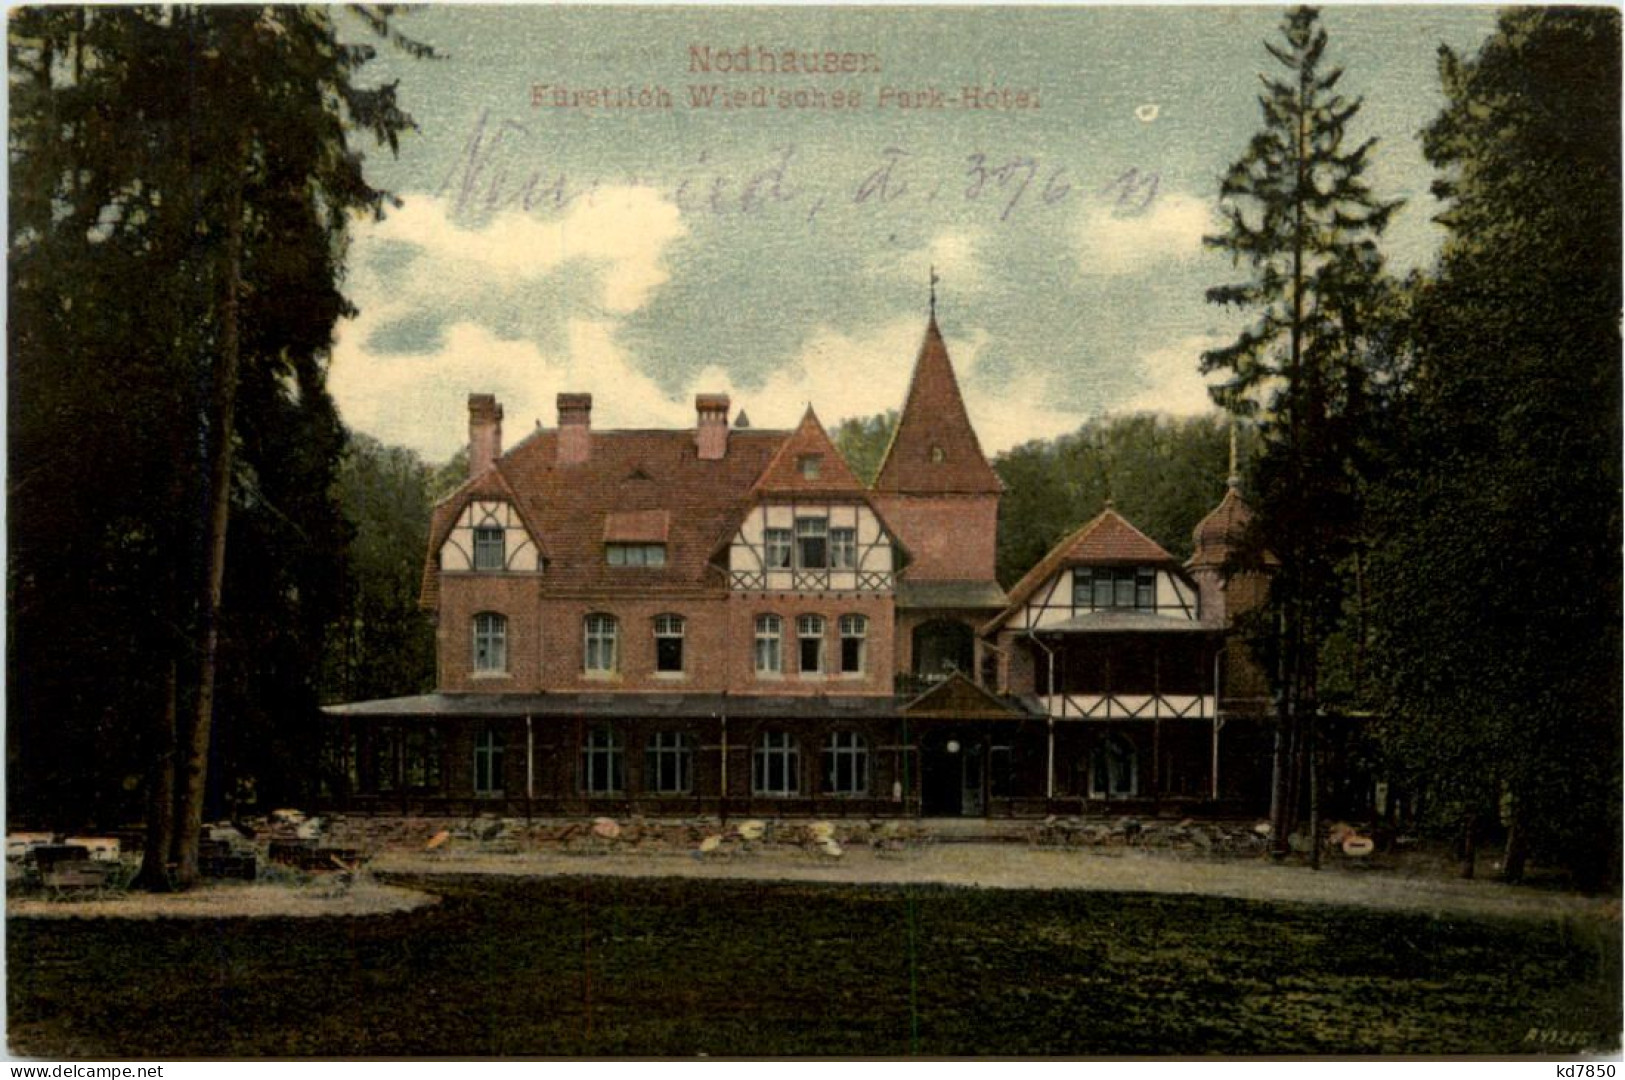 Nodhausen, Fürstlich Wiesches Park-Hotel - Neuwied